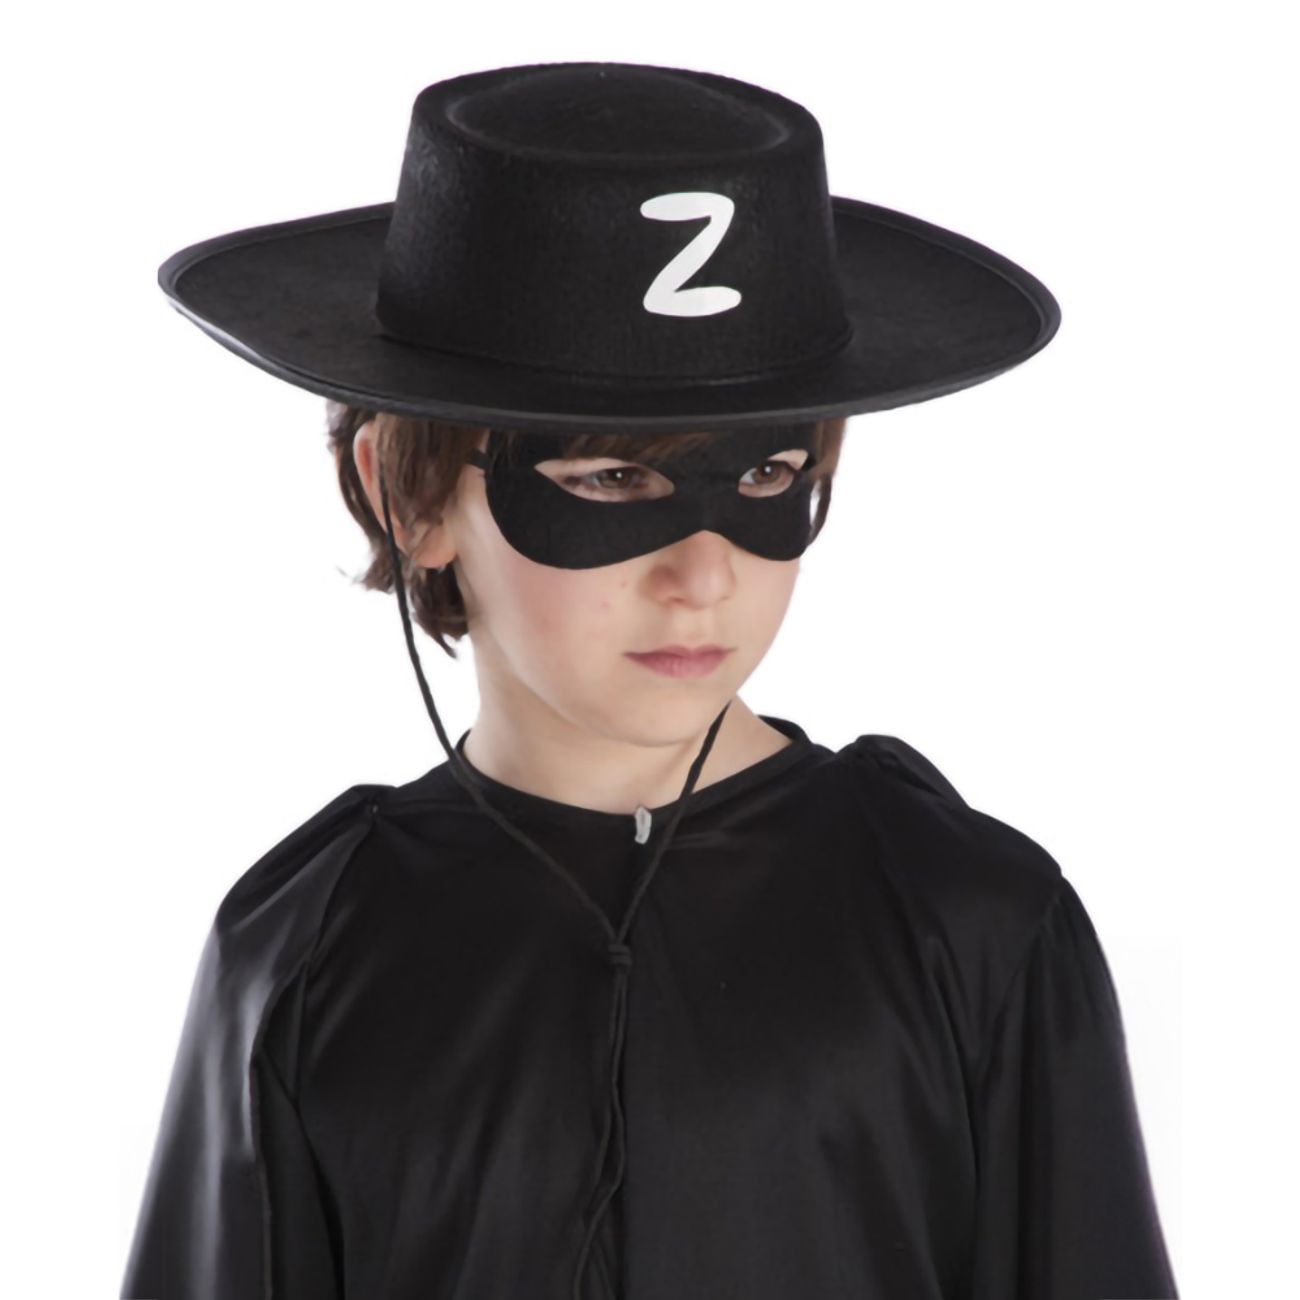 svart-bandit-hatt-for-barn-77727-2